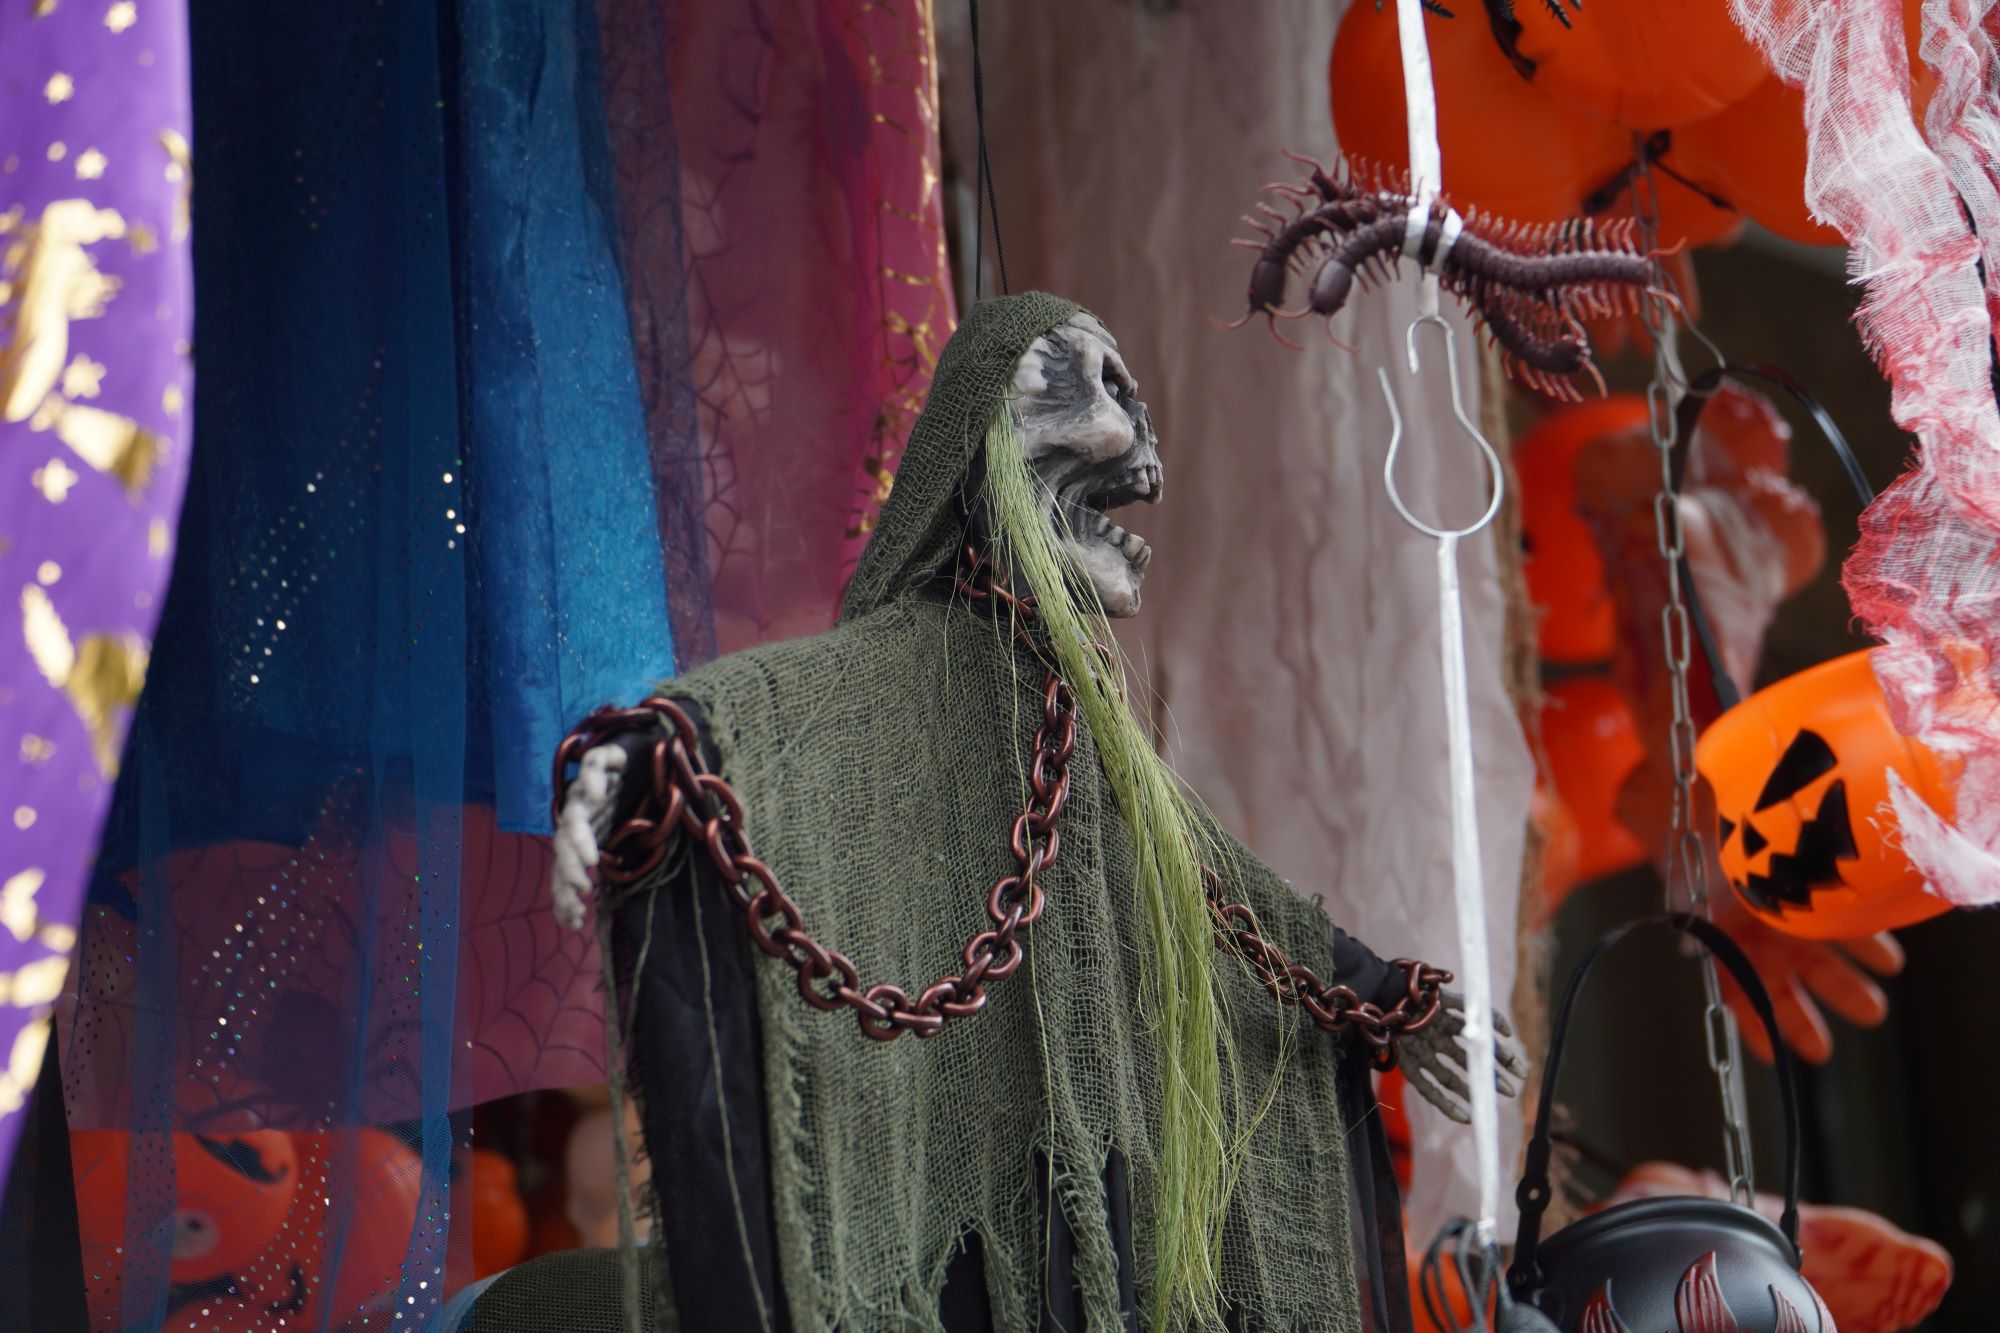 Đồ trang trí Halloween: Tiểu thương than ế có ngày bán chưa tới 50.000 đồng - Ảnh 3.